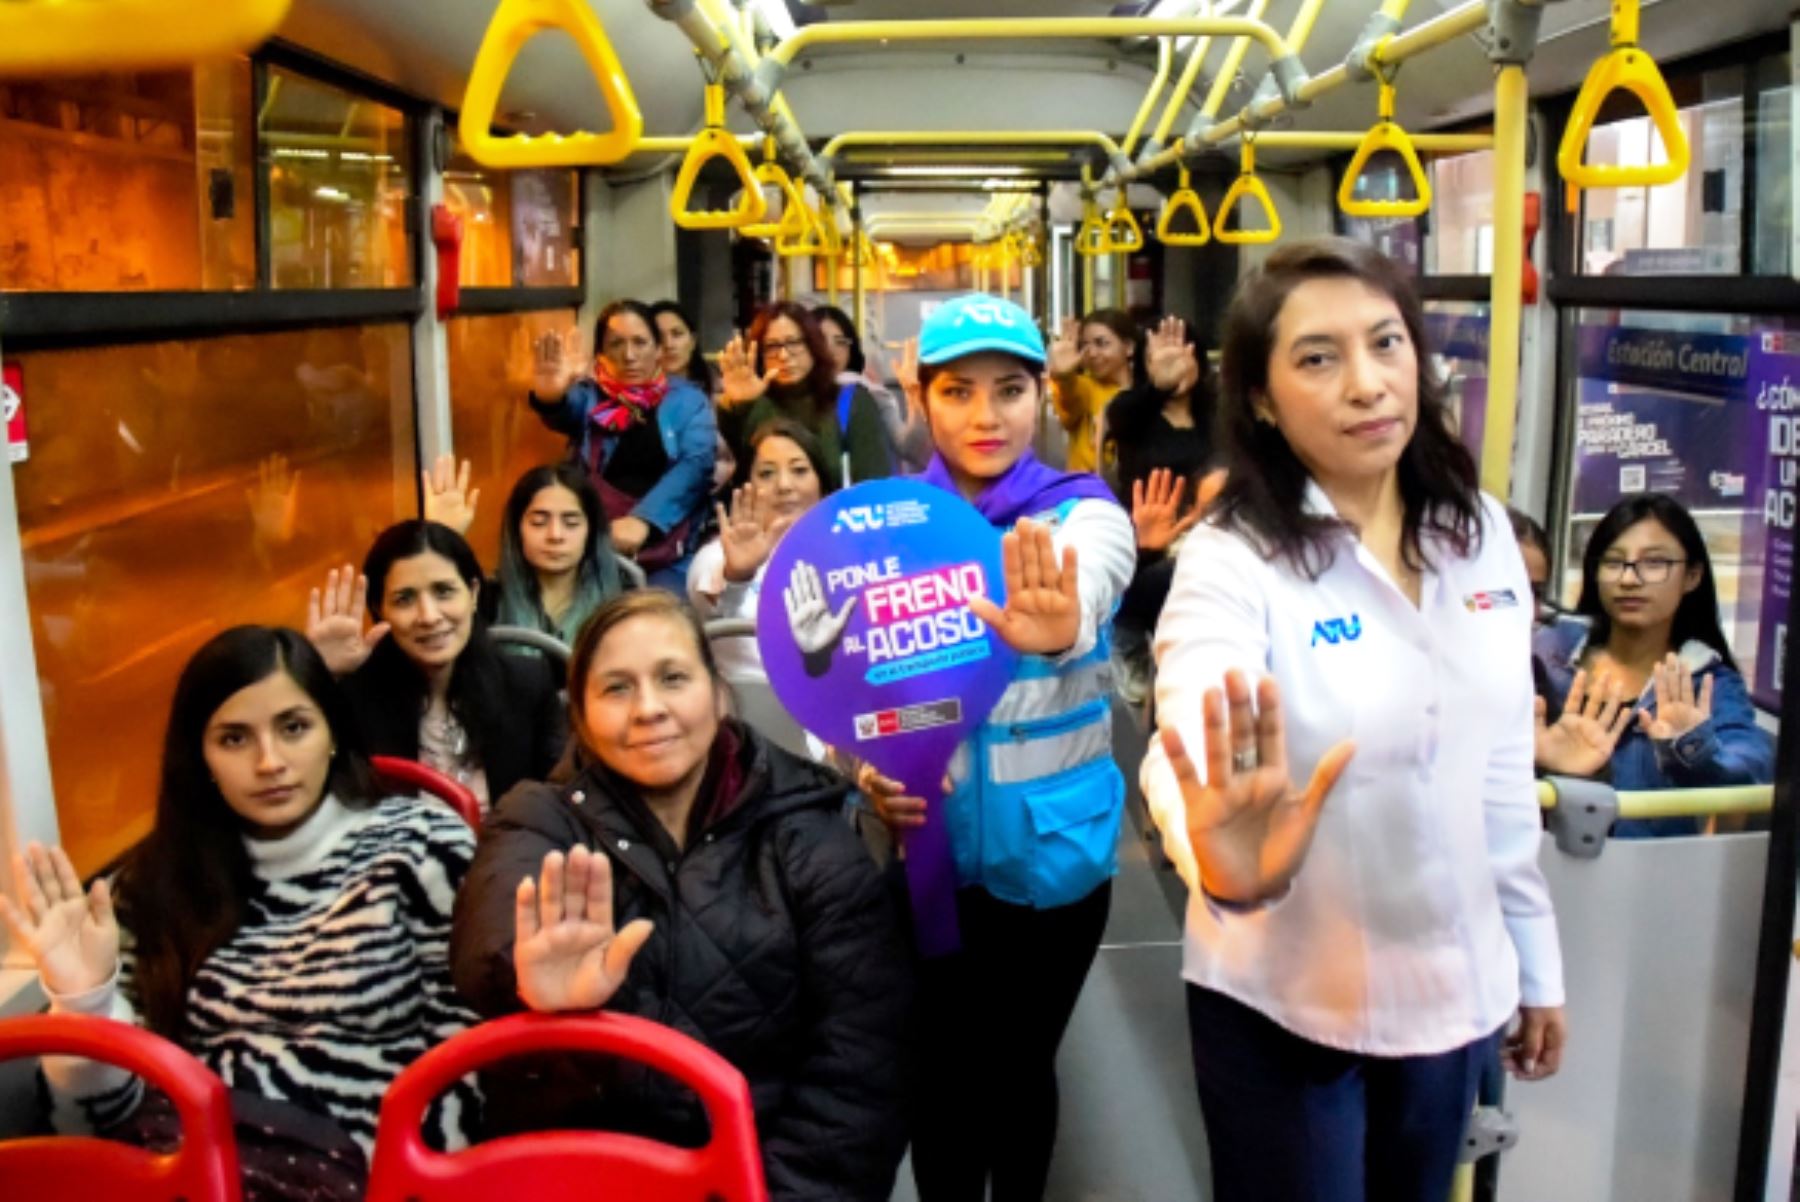 Metropolitano: campaña “Ponle freno al acoso” llegó a la estación Central. Foto: ANDINA/Difusión.